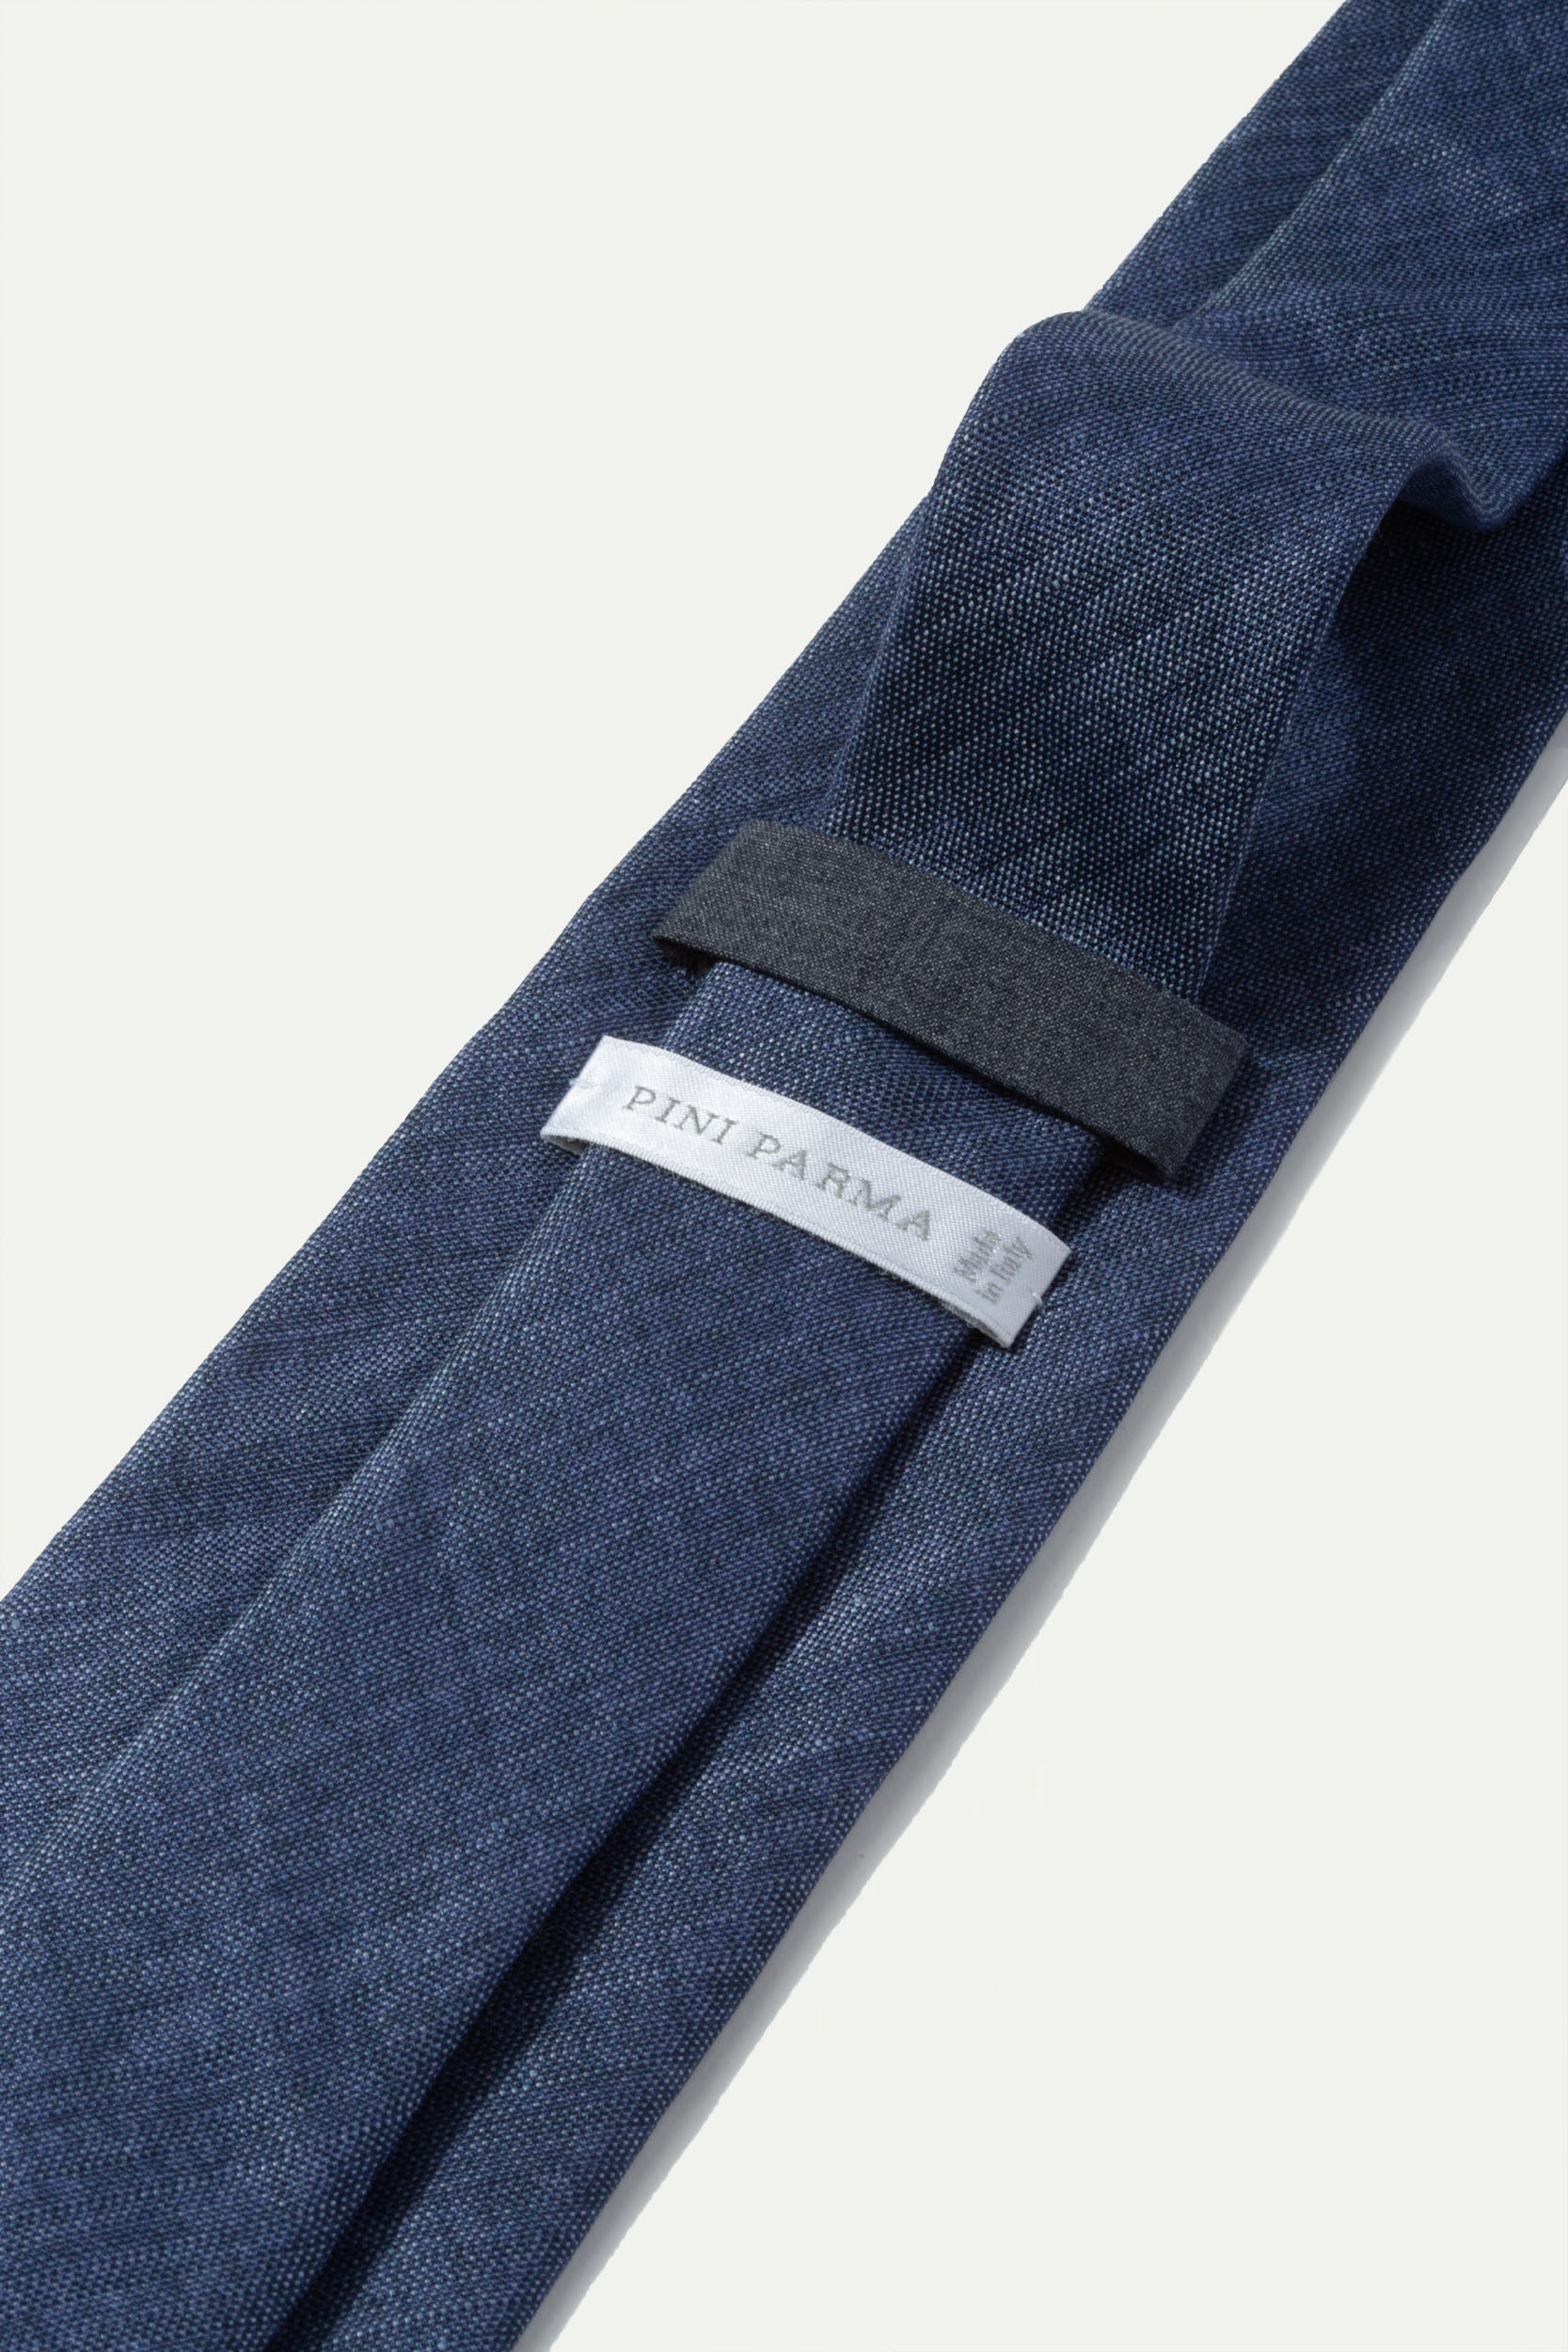 Cravatta in seta stampata blu - Made In Italy